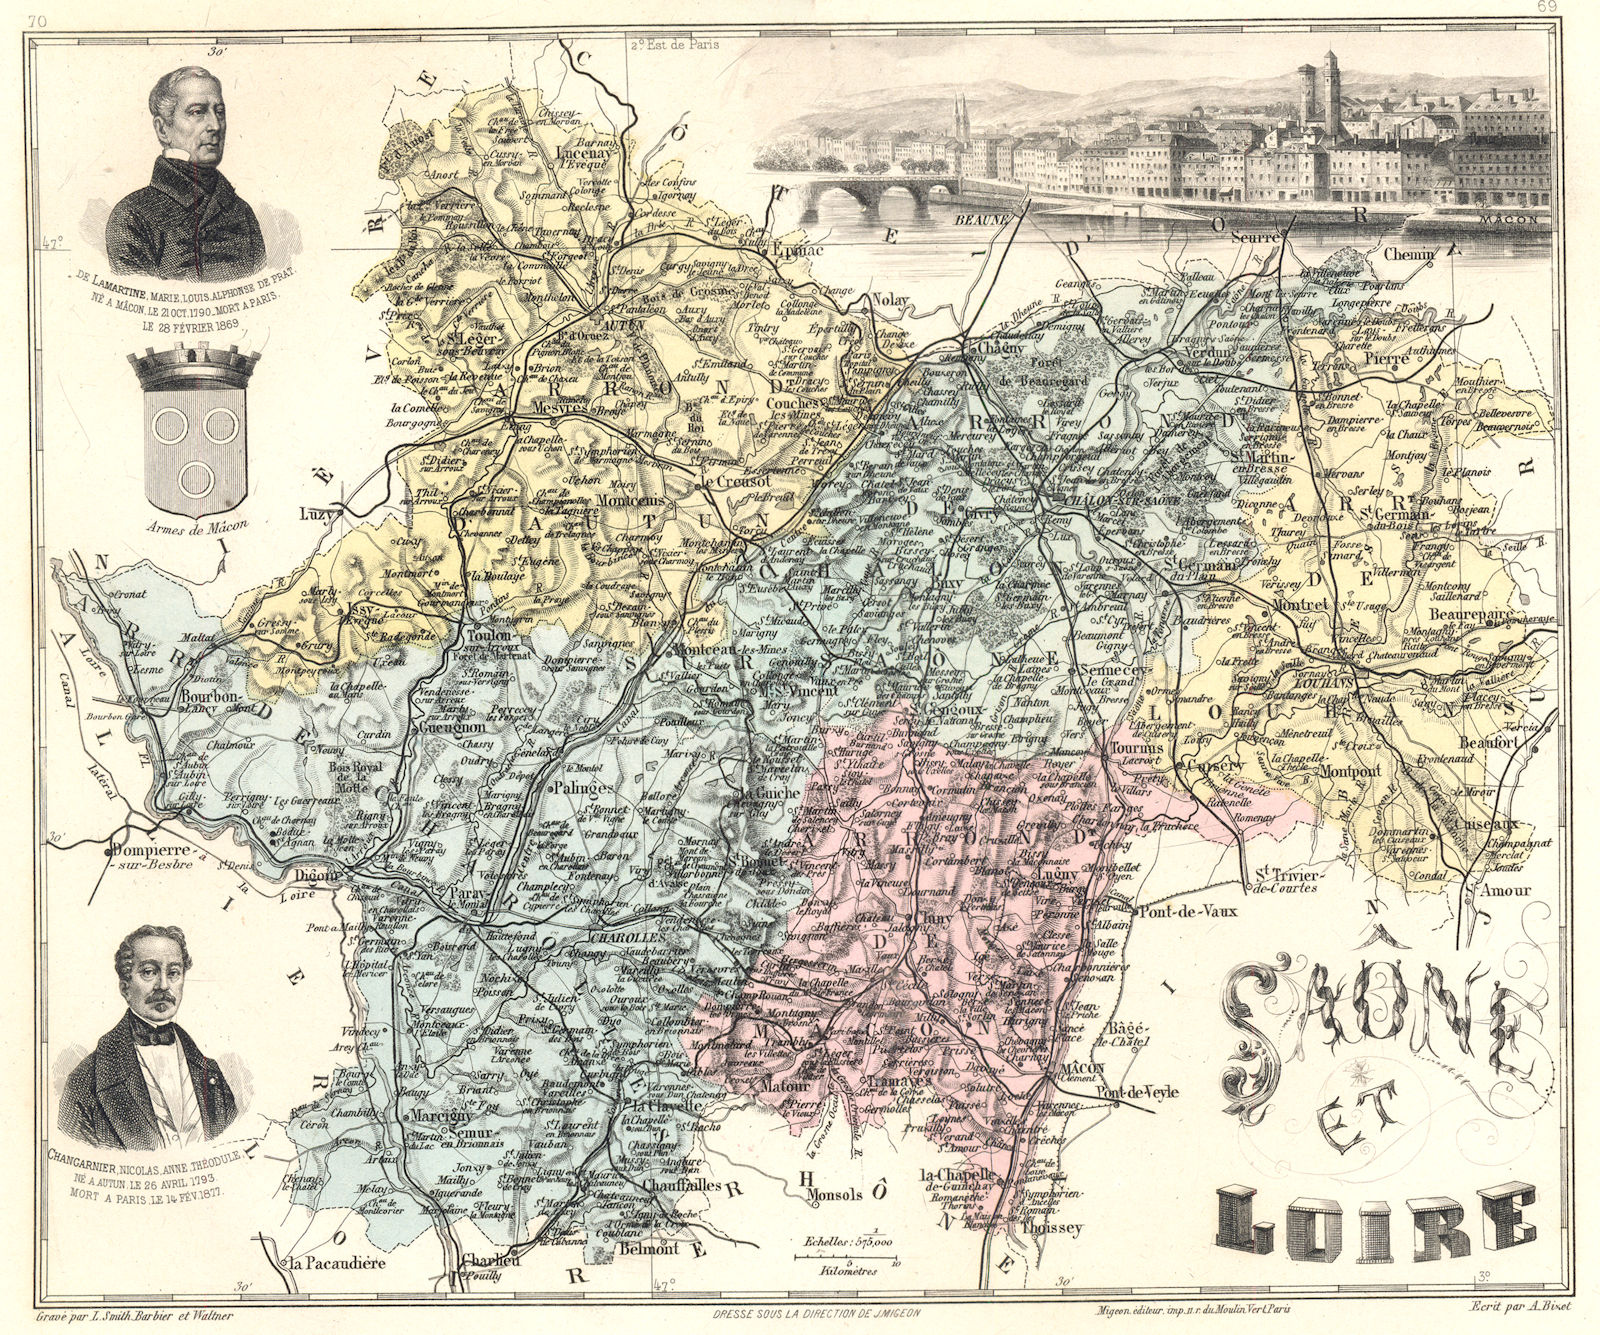 Associate Product SAÔNE-ET-LOIRE. Saône-et-Loire département. Mâcon vignette.Vuillemin 1903 map